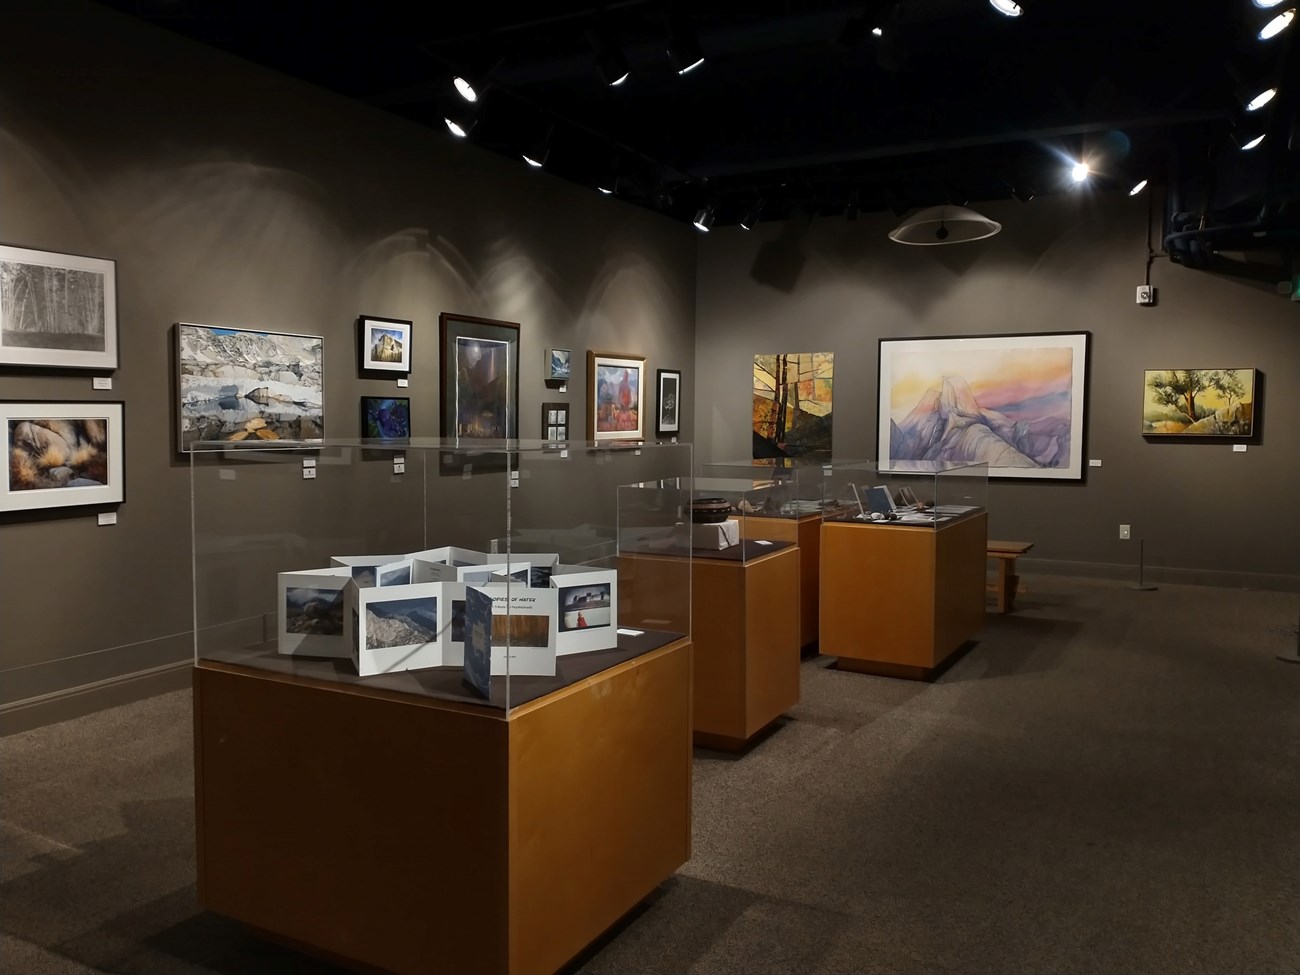 Art exhibit in the Yosemite Museum